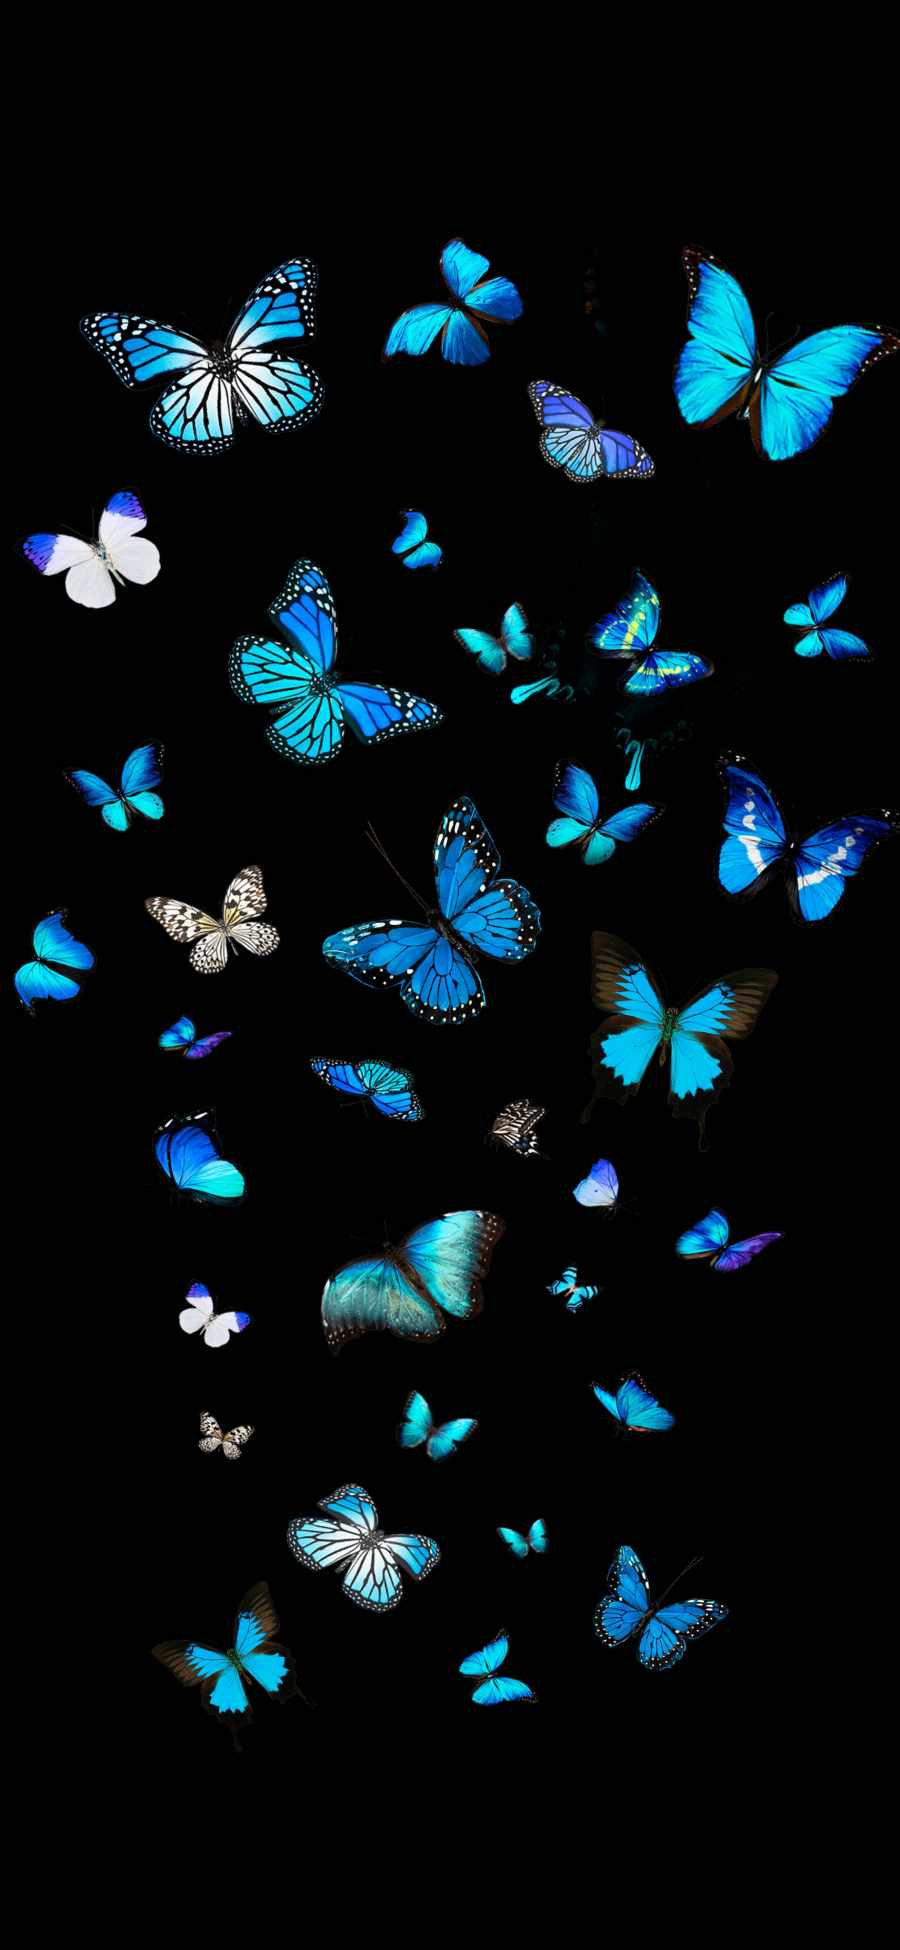 Blue Butterflies IPhone Wallpaper IPhone Wallpapers Wallpaper Download   MOONAZ